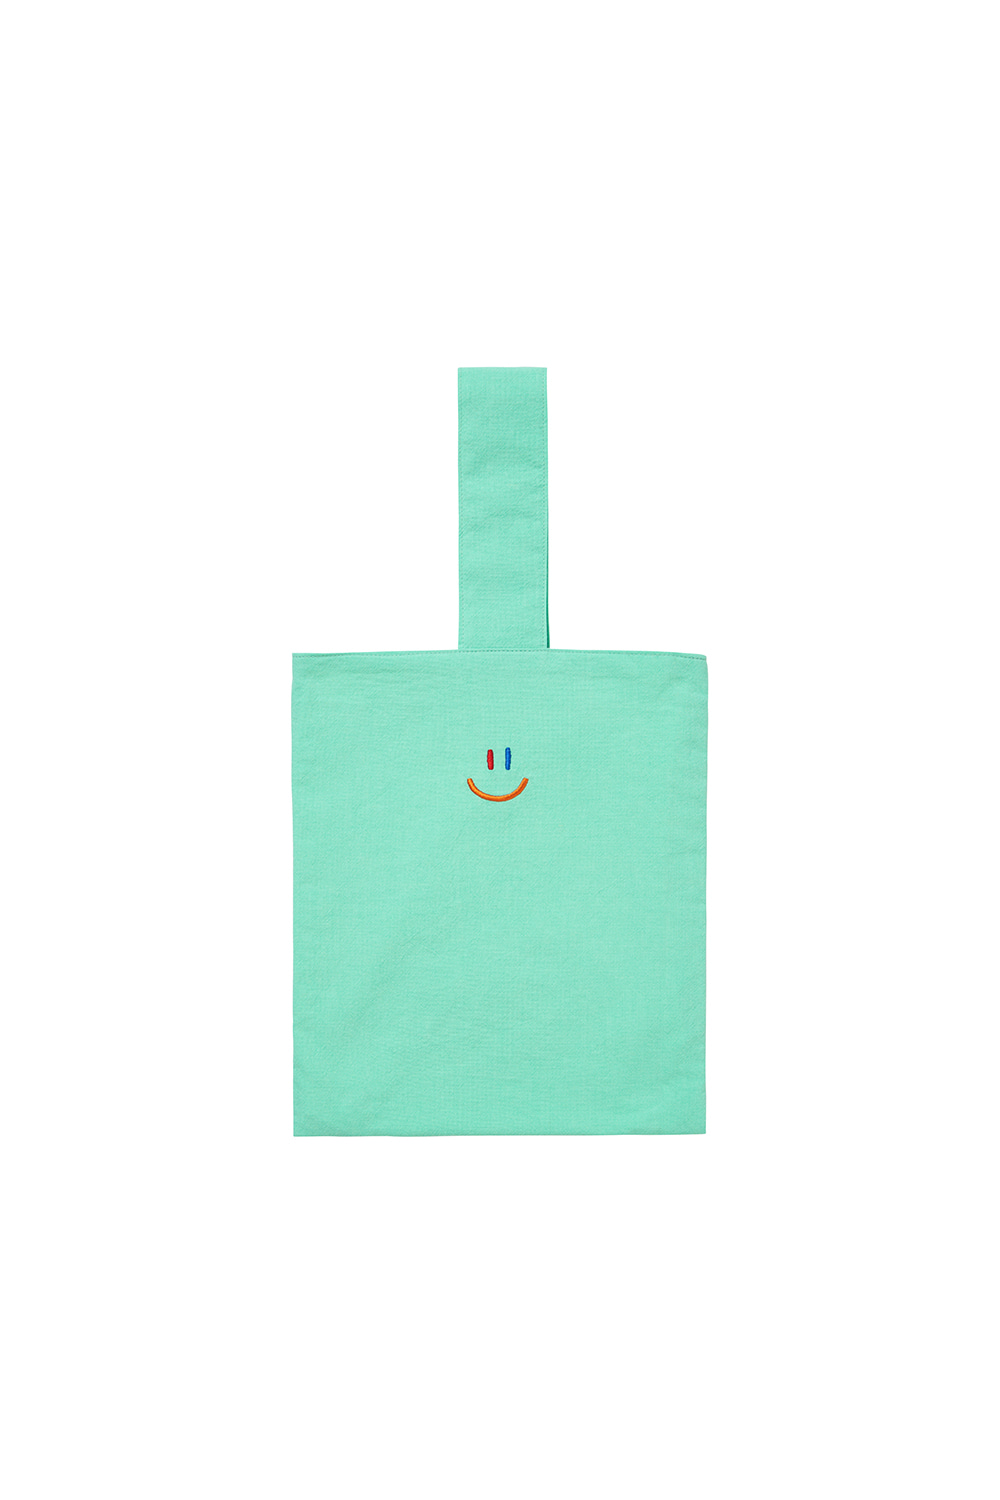 LaLa Eco Bag [Mint]